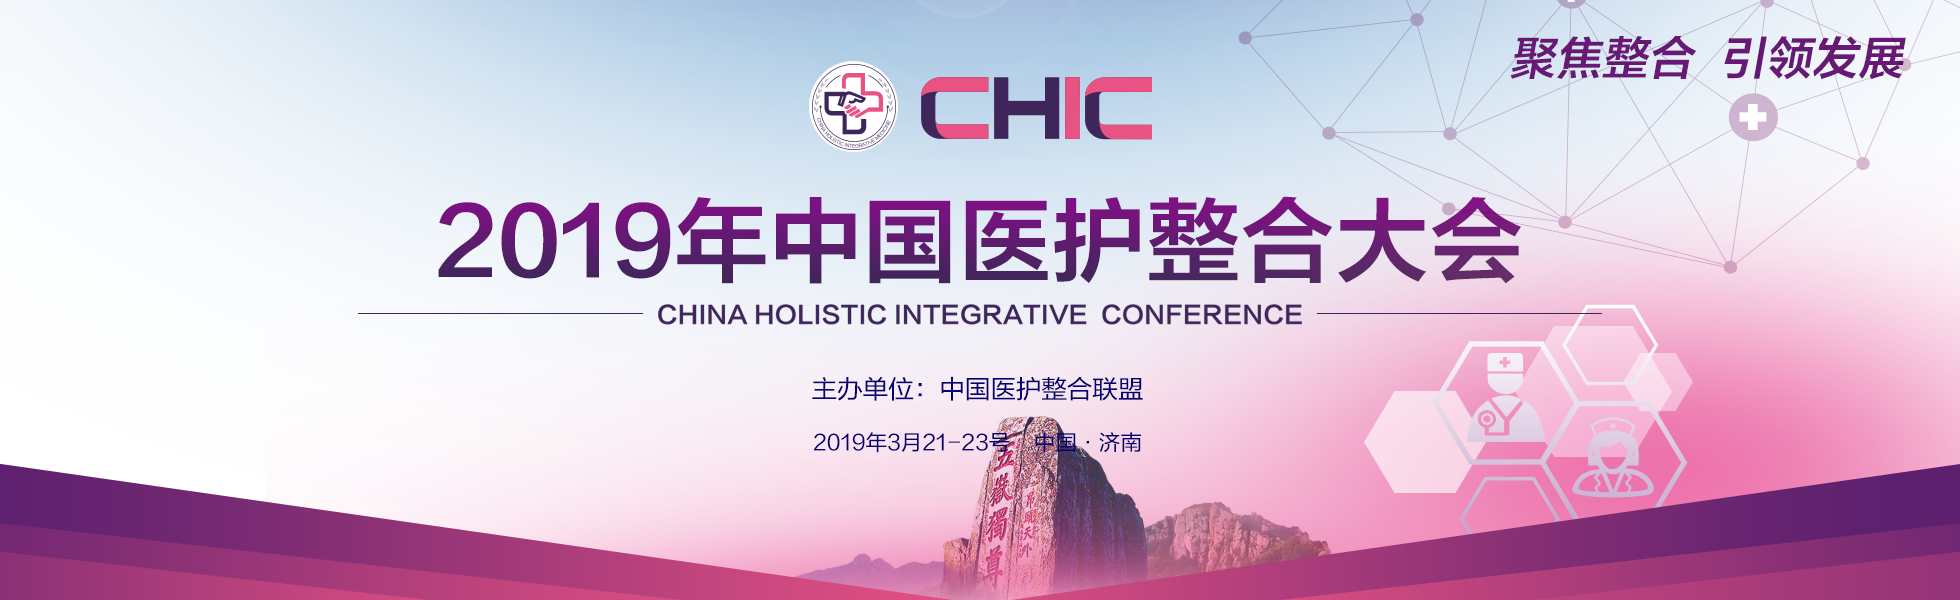 2019年中国医护整合大会